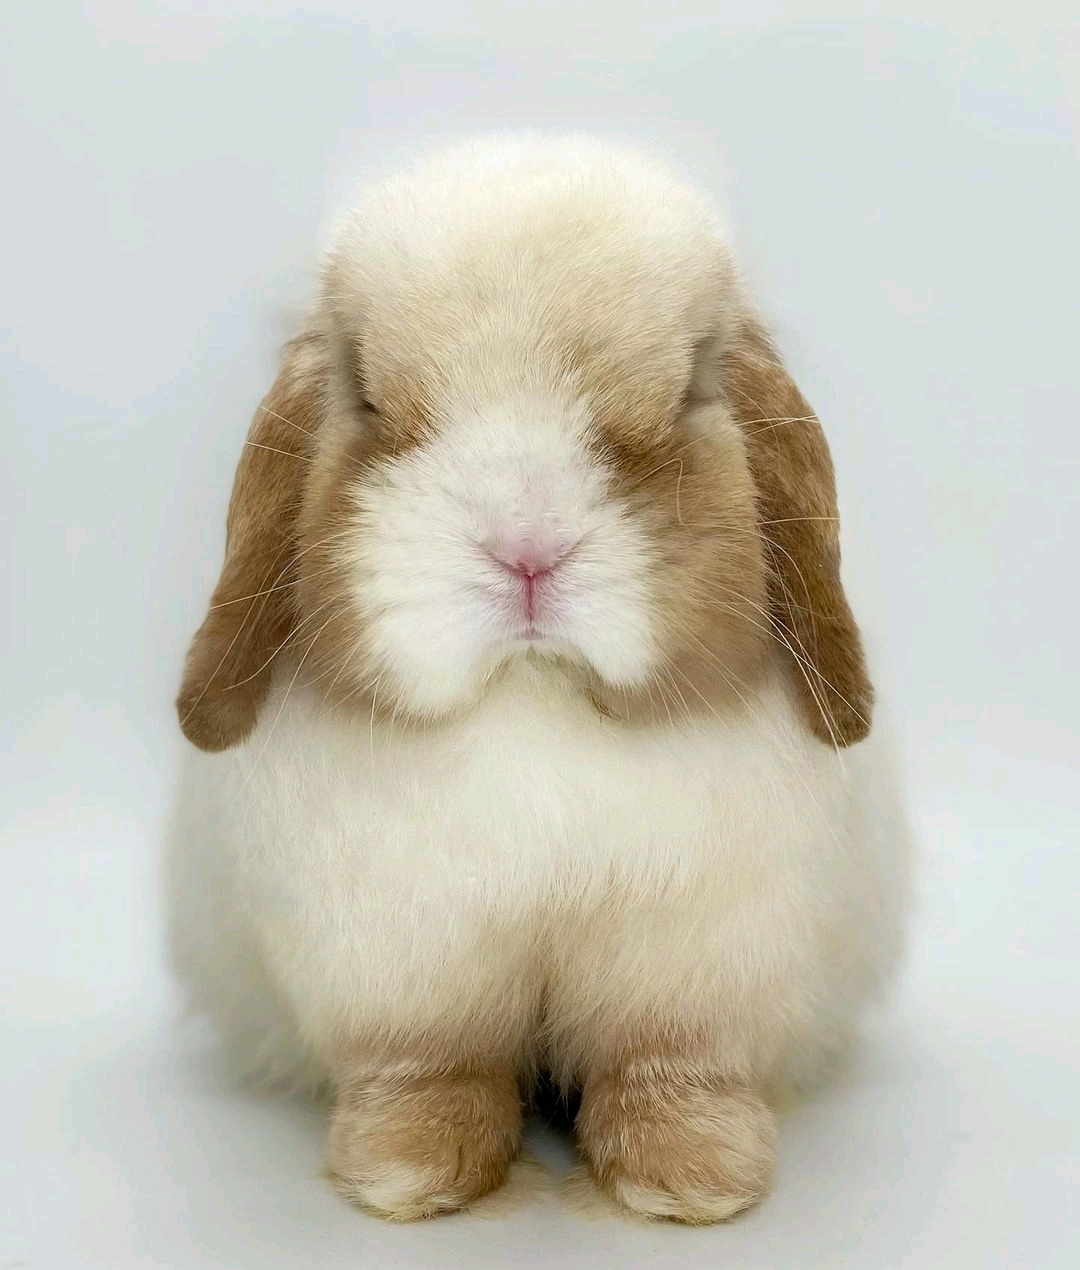 荷兰垂耳兔价格_图片_纯种荷兰垂耳兔幼犬多少钱一只_荷兰垂耳兔好养吗-波奇网